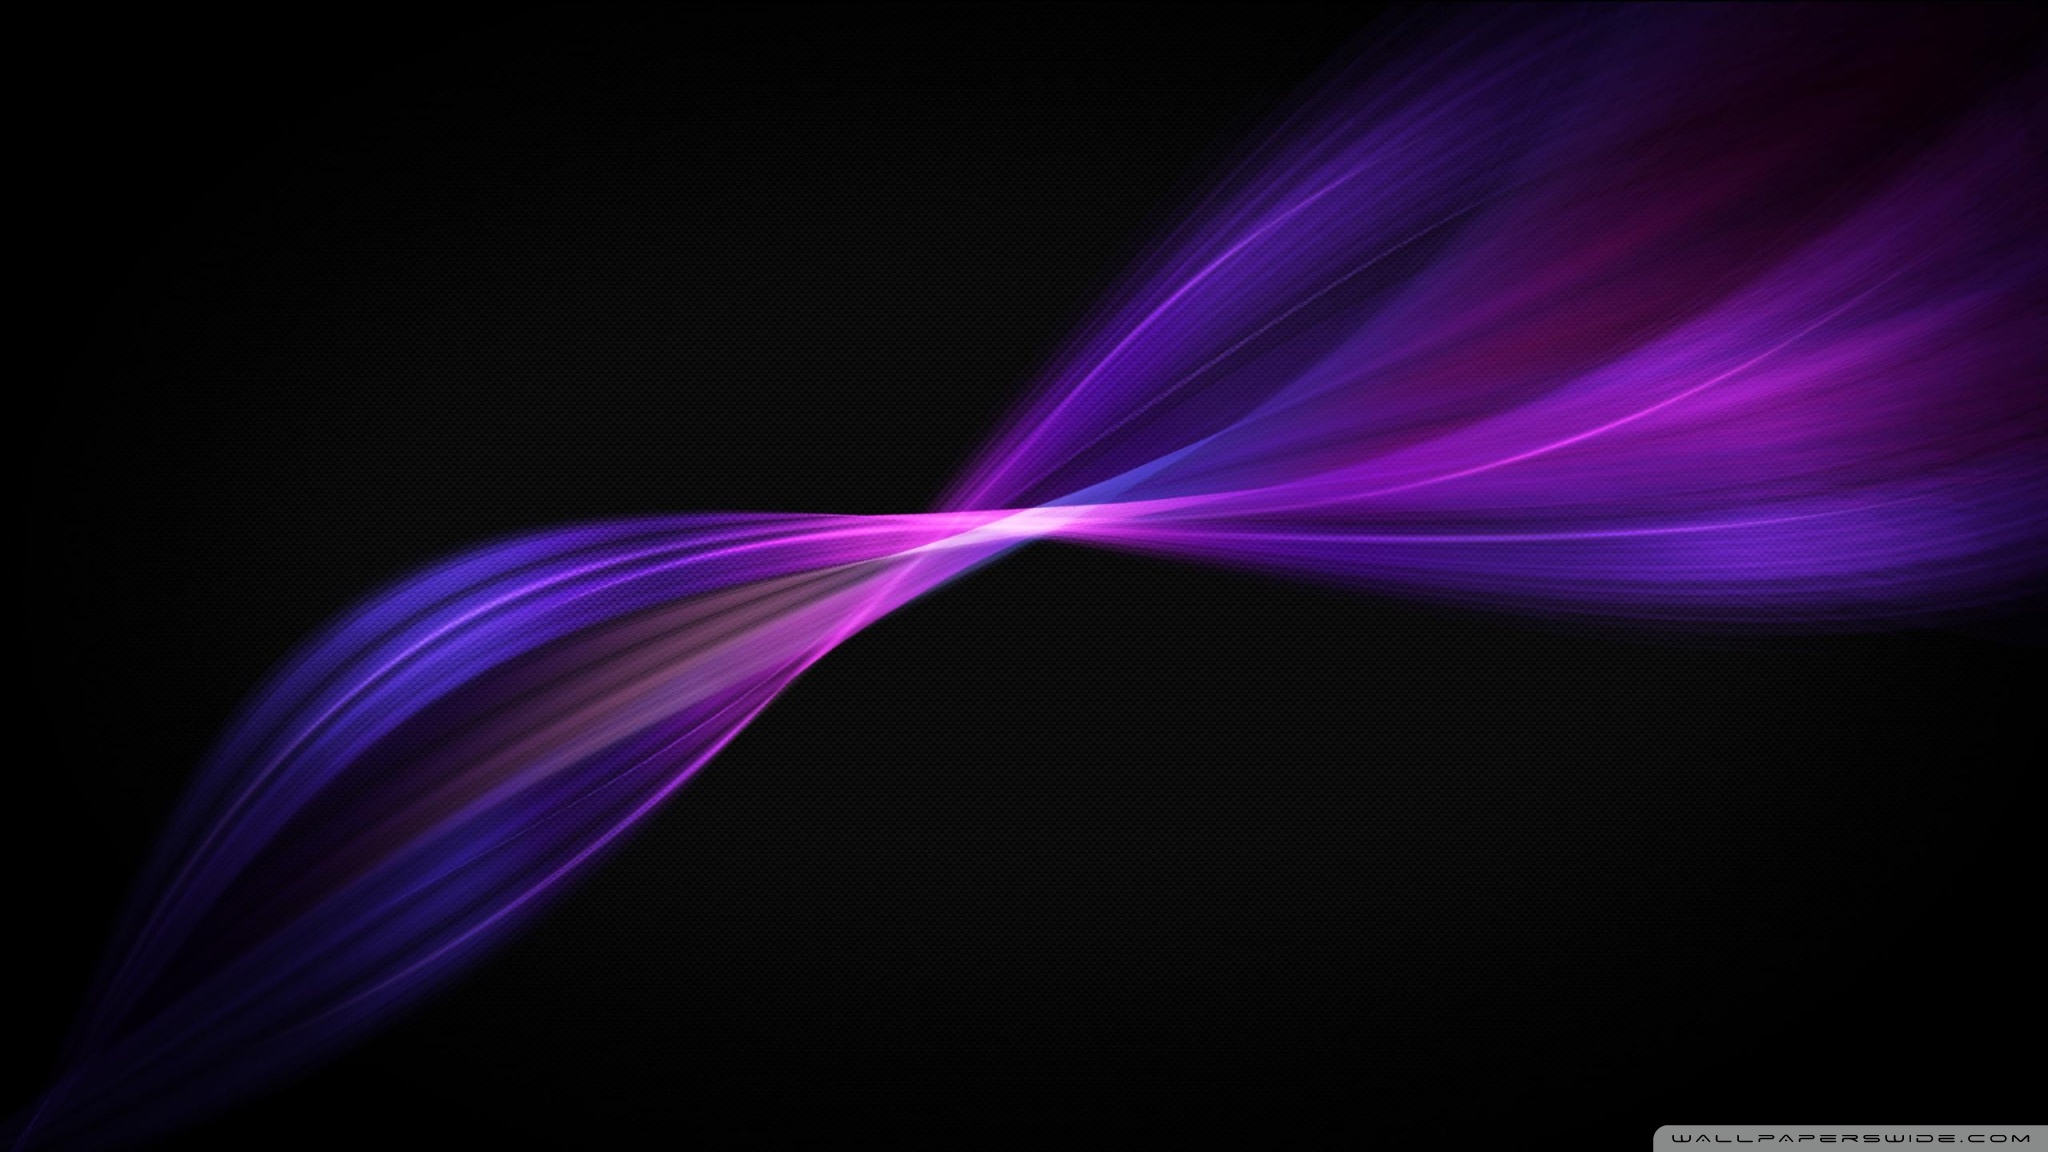 Purple Wavy Lines Ultra HD Desktop Background Wallpaper for 4K UHD TV ...